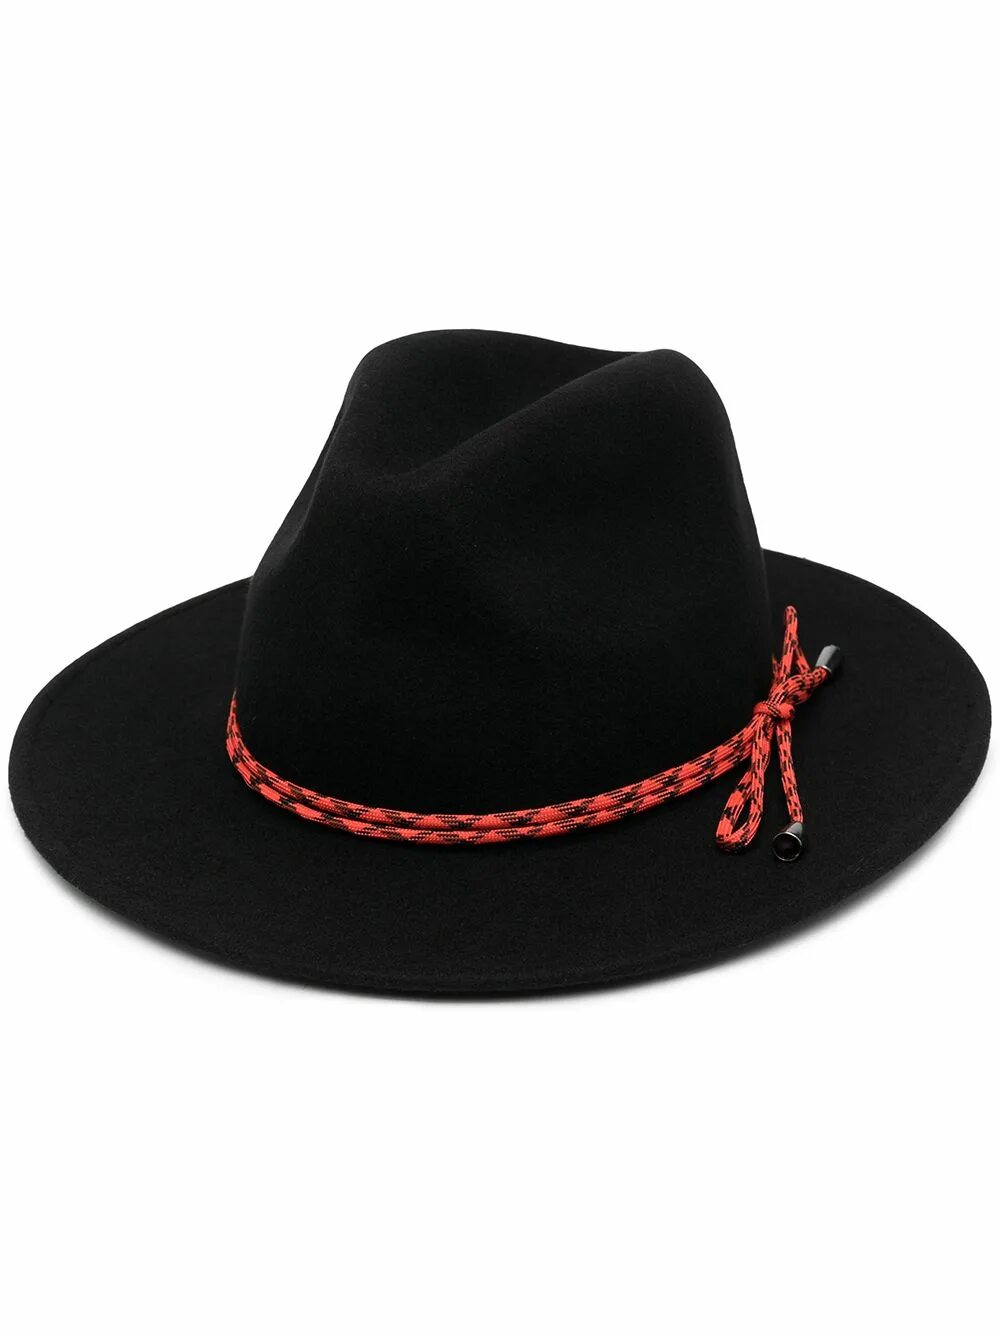 Шляпа Paul Smith коричневый. Шляпа черная с красной ленточкой. Шляпа до пола. Чёрная шляпа Федора с красной лентой. Шляпы здравствуйте